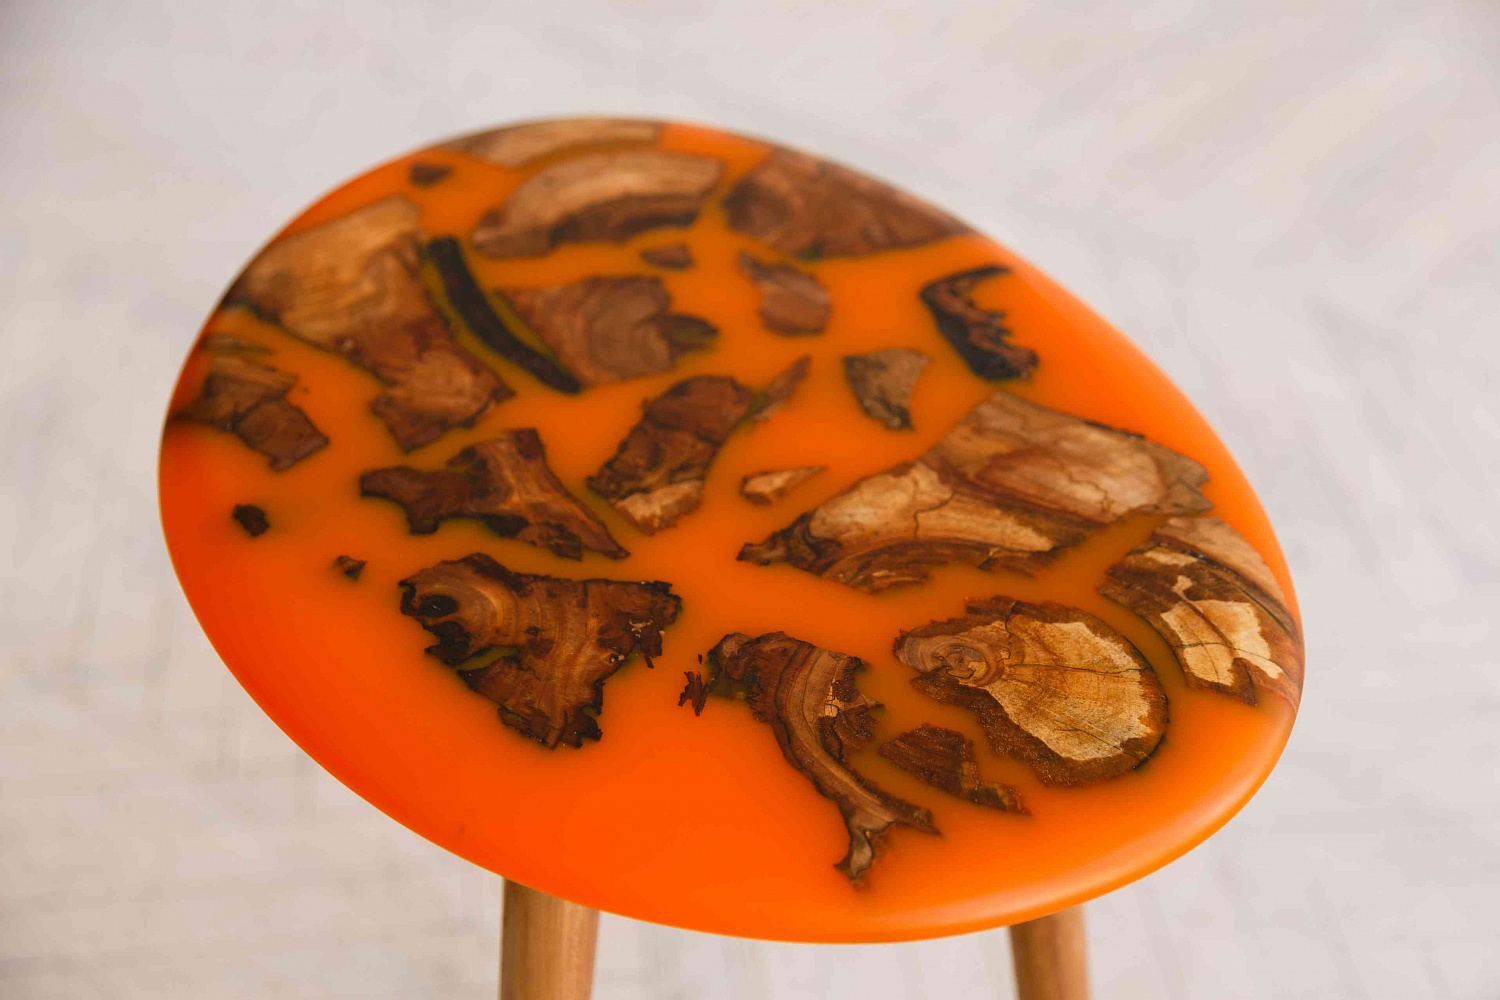 Столик из карагача с оранжевой смолой, деревянные ножки, h-520 мм